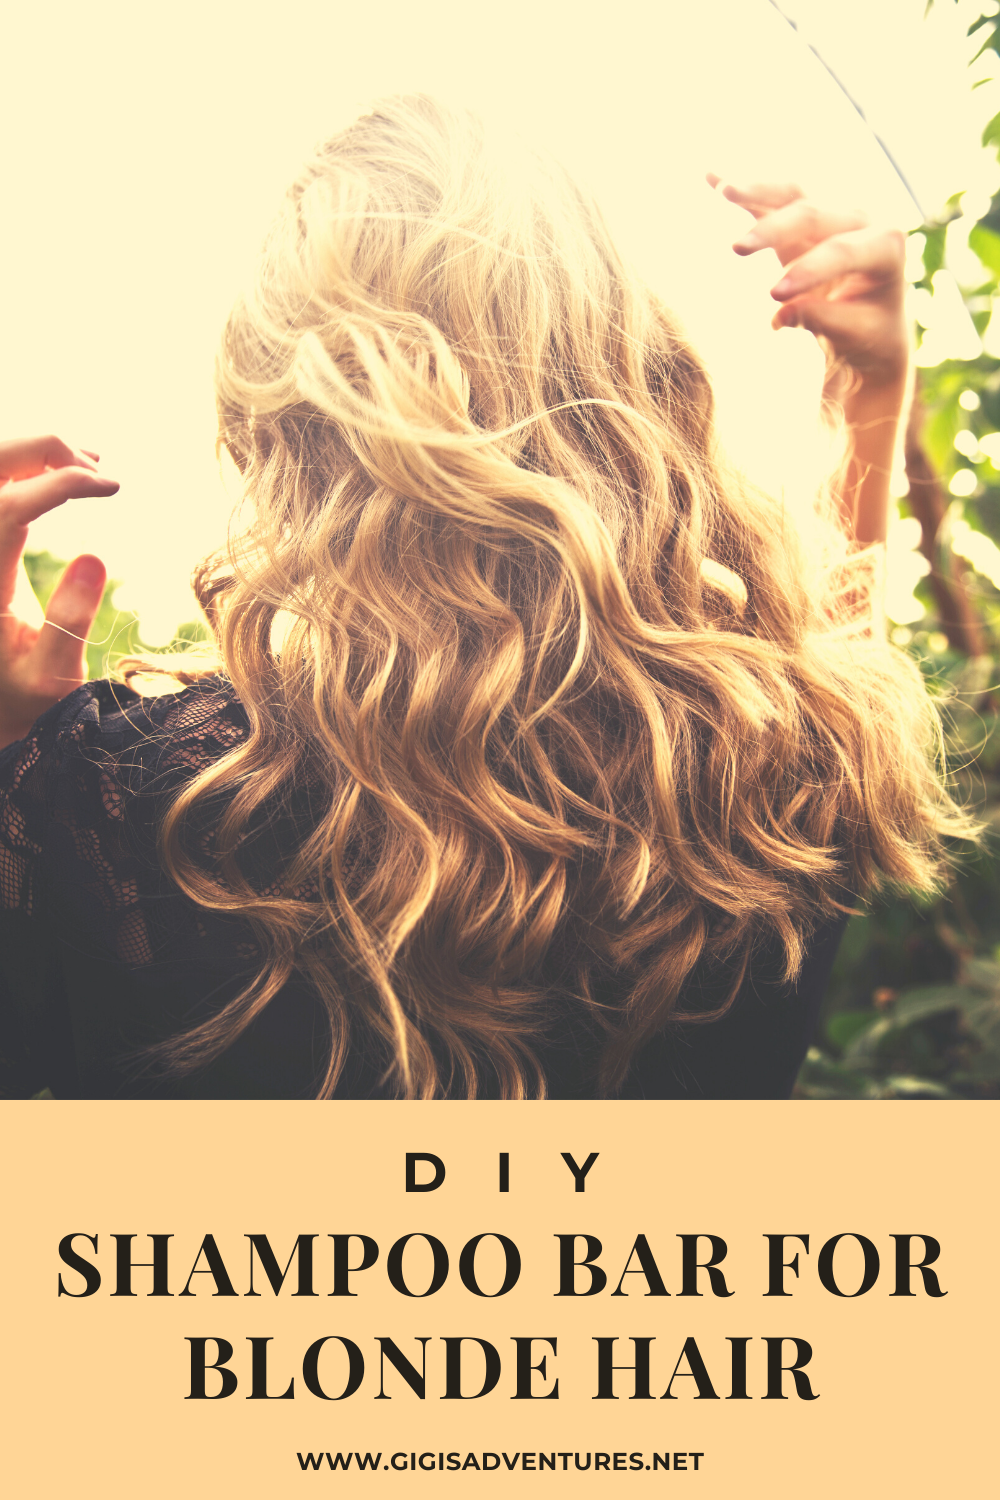 DIY Shampoo Bar for Blonde Hair | Super Easy and Cheap!